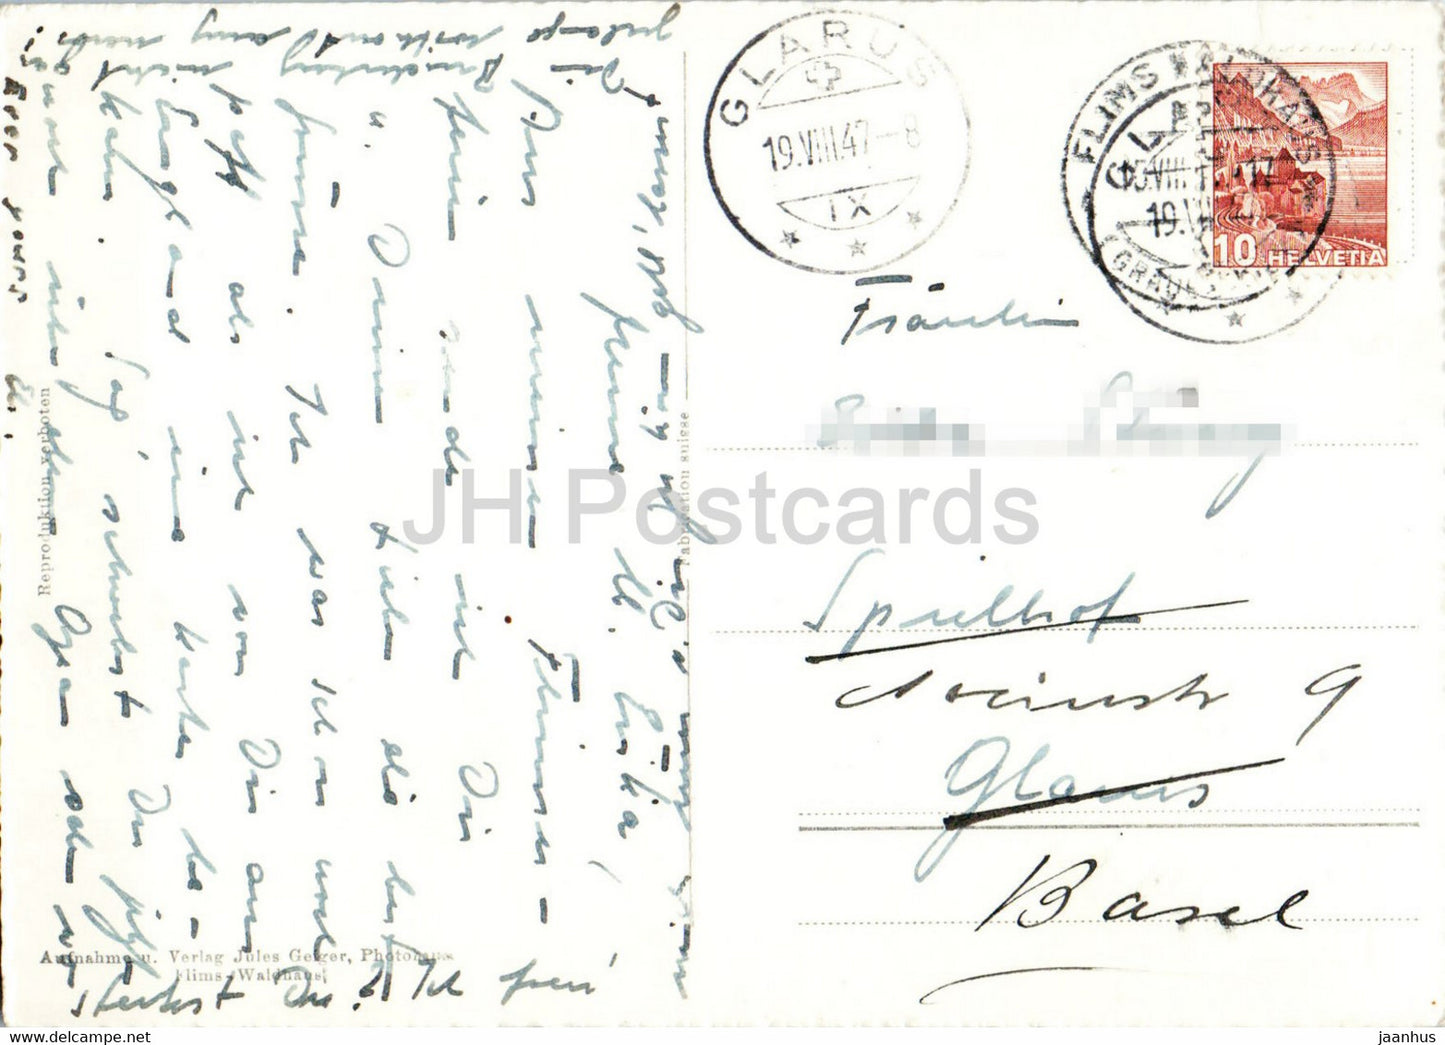 Flims - Motiv am Caumasee - 1534 - alte Postkarte - 1947 - Schweiz - gebraucht